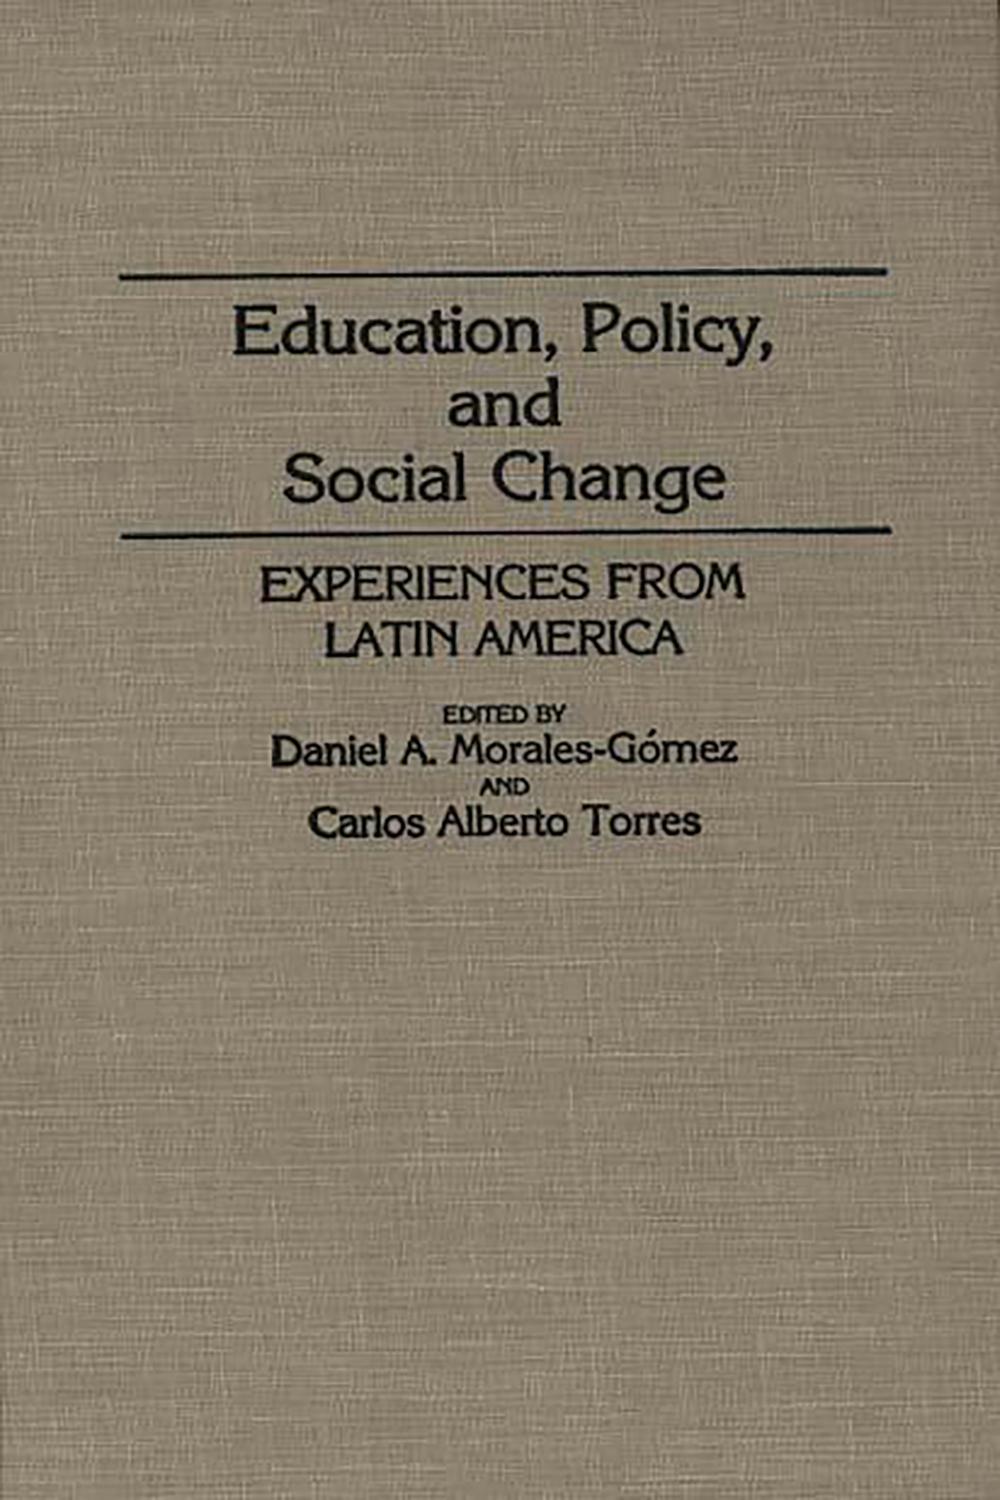 Education, Policy, and Social Change - Daniel A. Morales Gomez, Carlos Alberto Torres